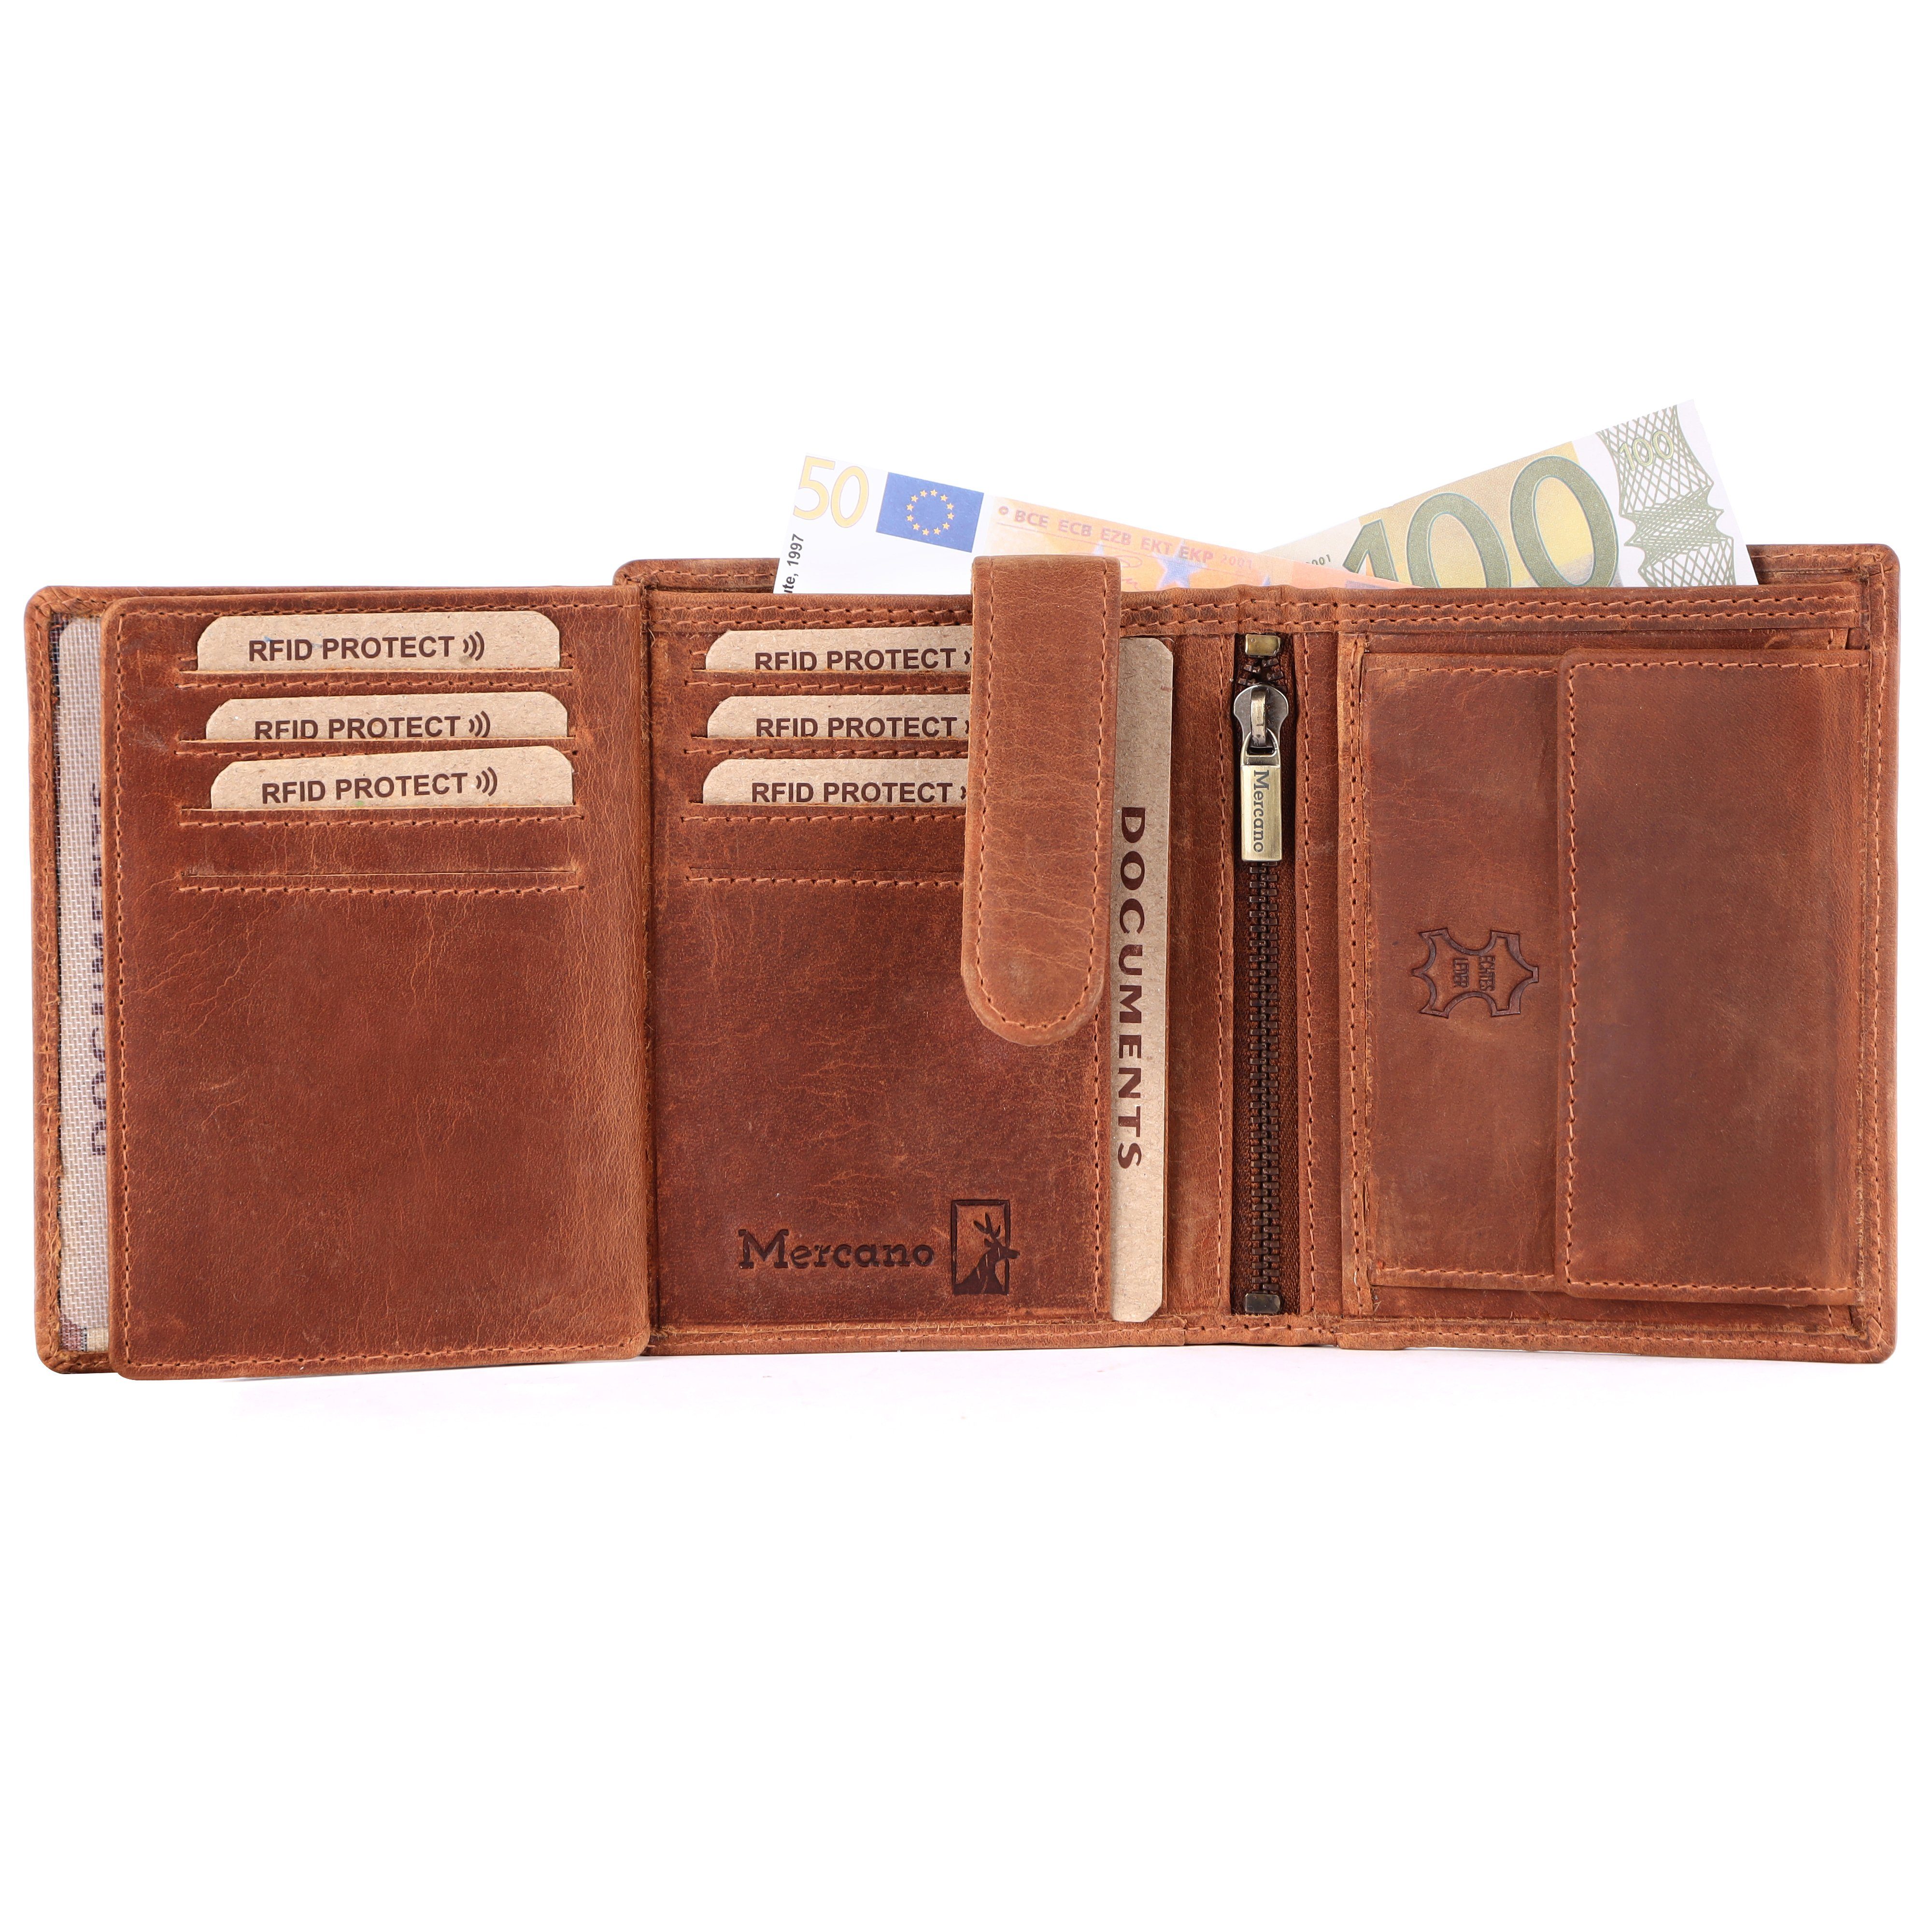 Mercano Geldbörse für Damen und Herren aus Echtleder (inkl. Geschenkbox), RFID-Schutz, Münzfach, vielseitige Dokumentfächer